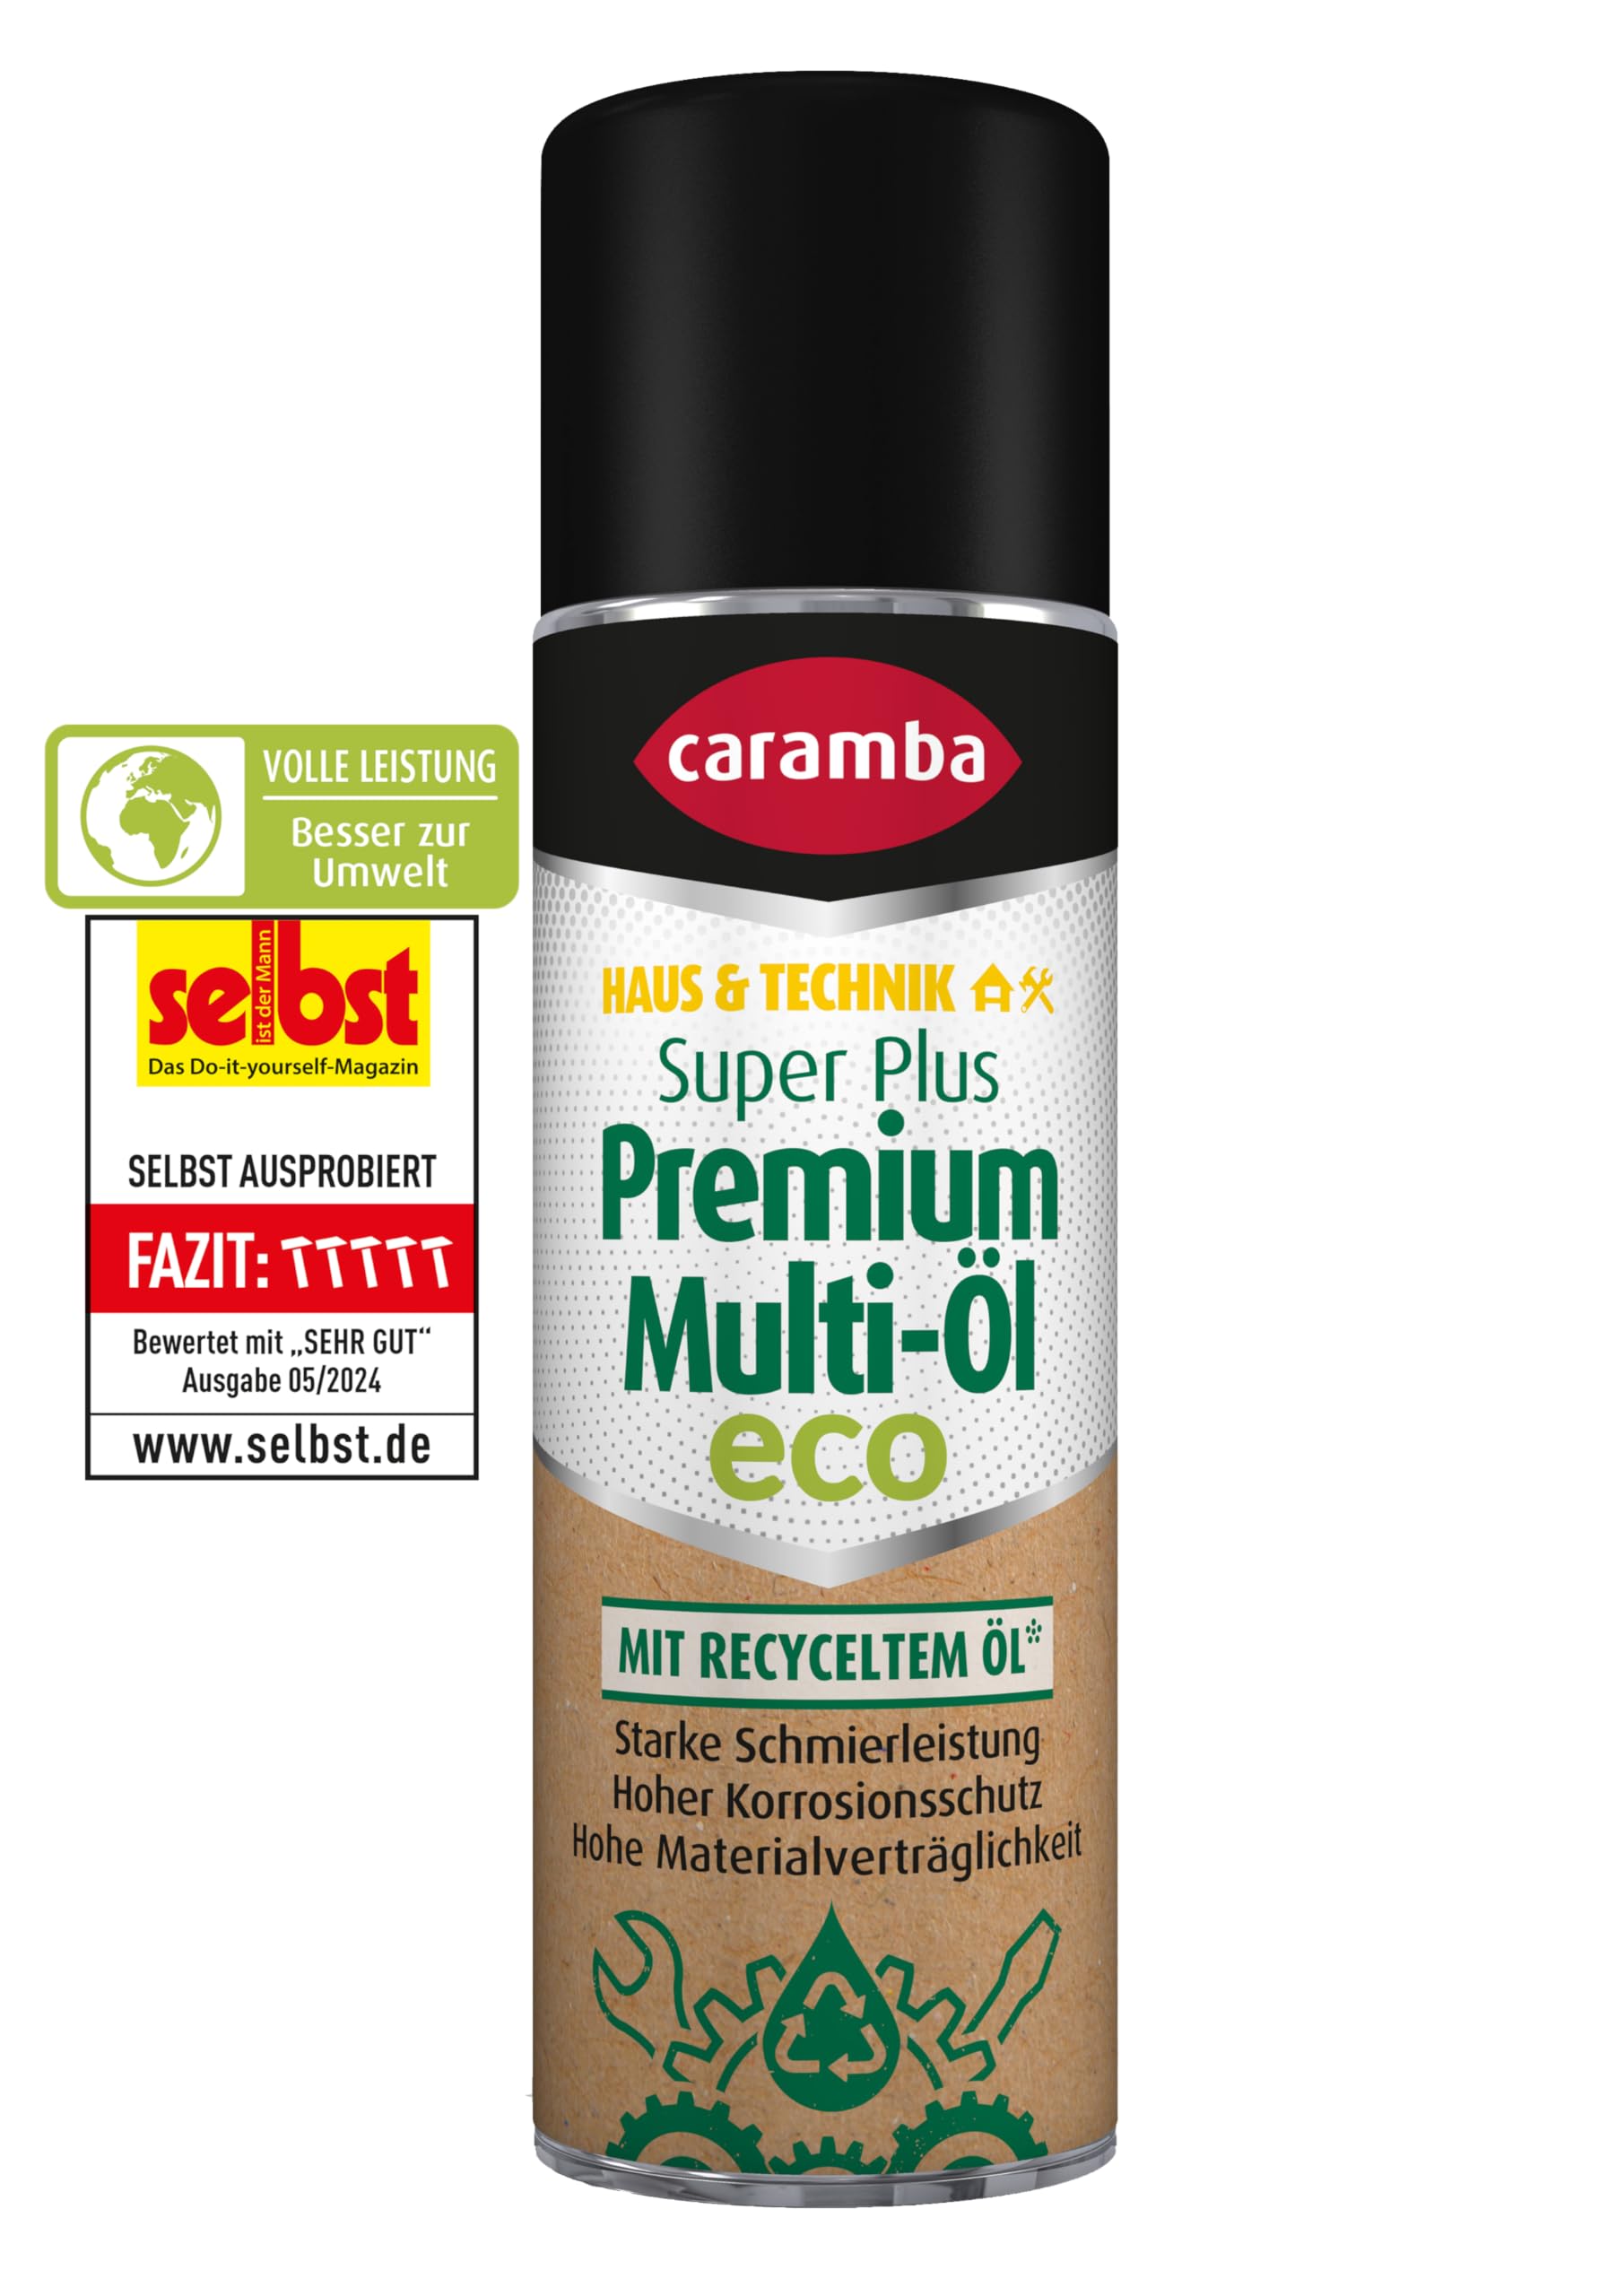 Caramba Super Plus Premium Multi-Öl Eco (300 ml) – Ölspray mit starker Schmierleistung für hohen Korrosions- und Verschleißschutz – besser für die Umwelt mit 25% recycelten Inhaltsstoffen* von Caramba